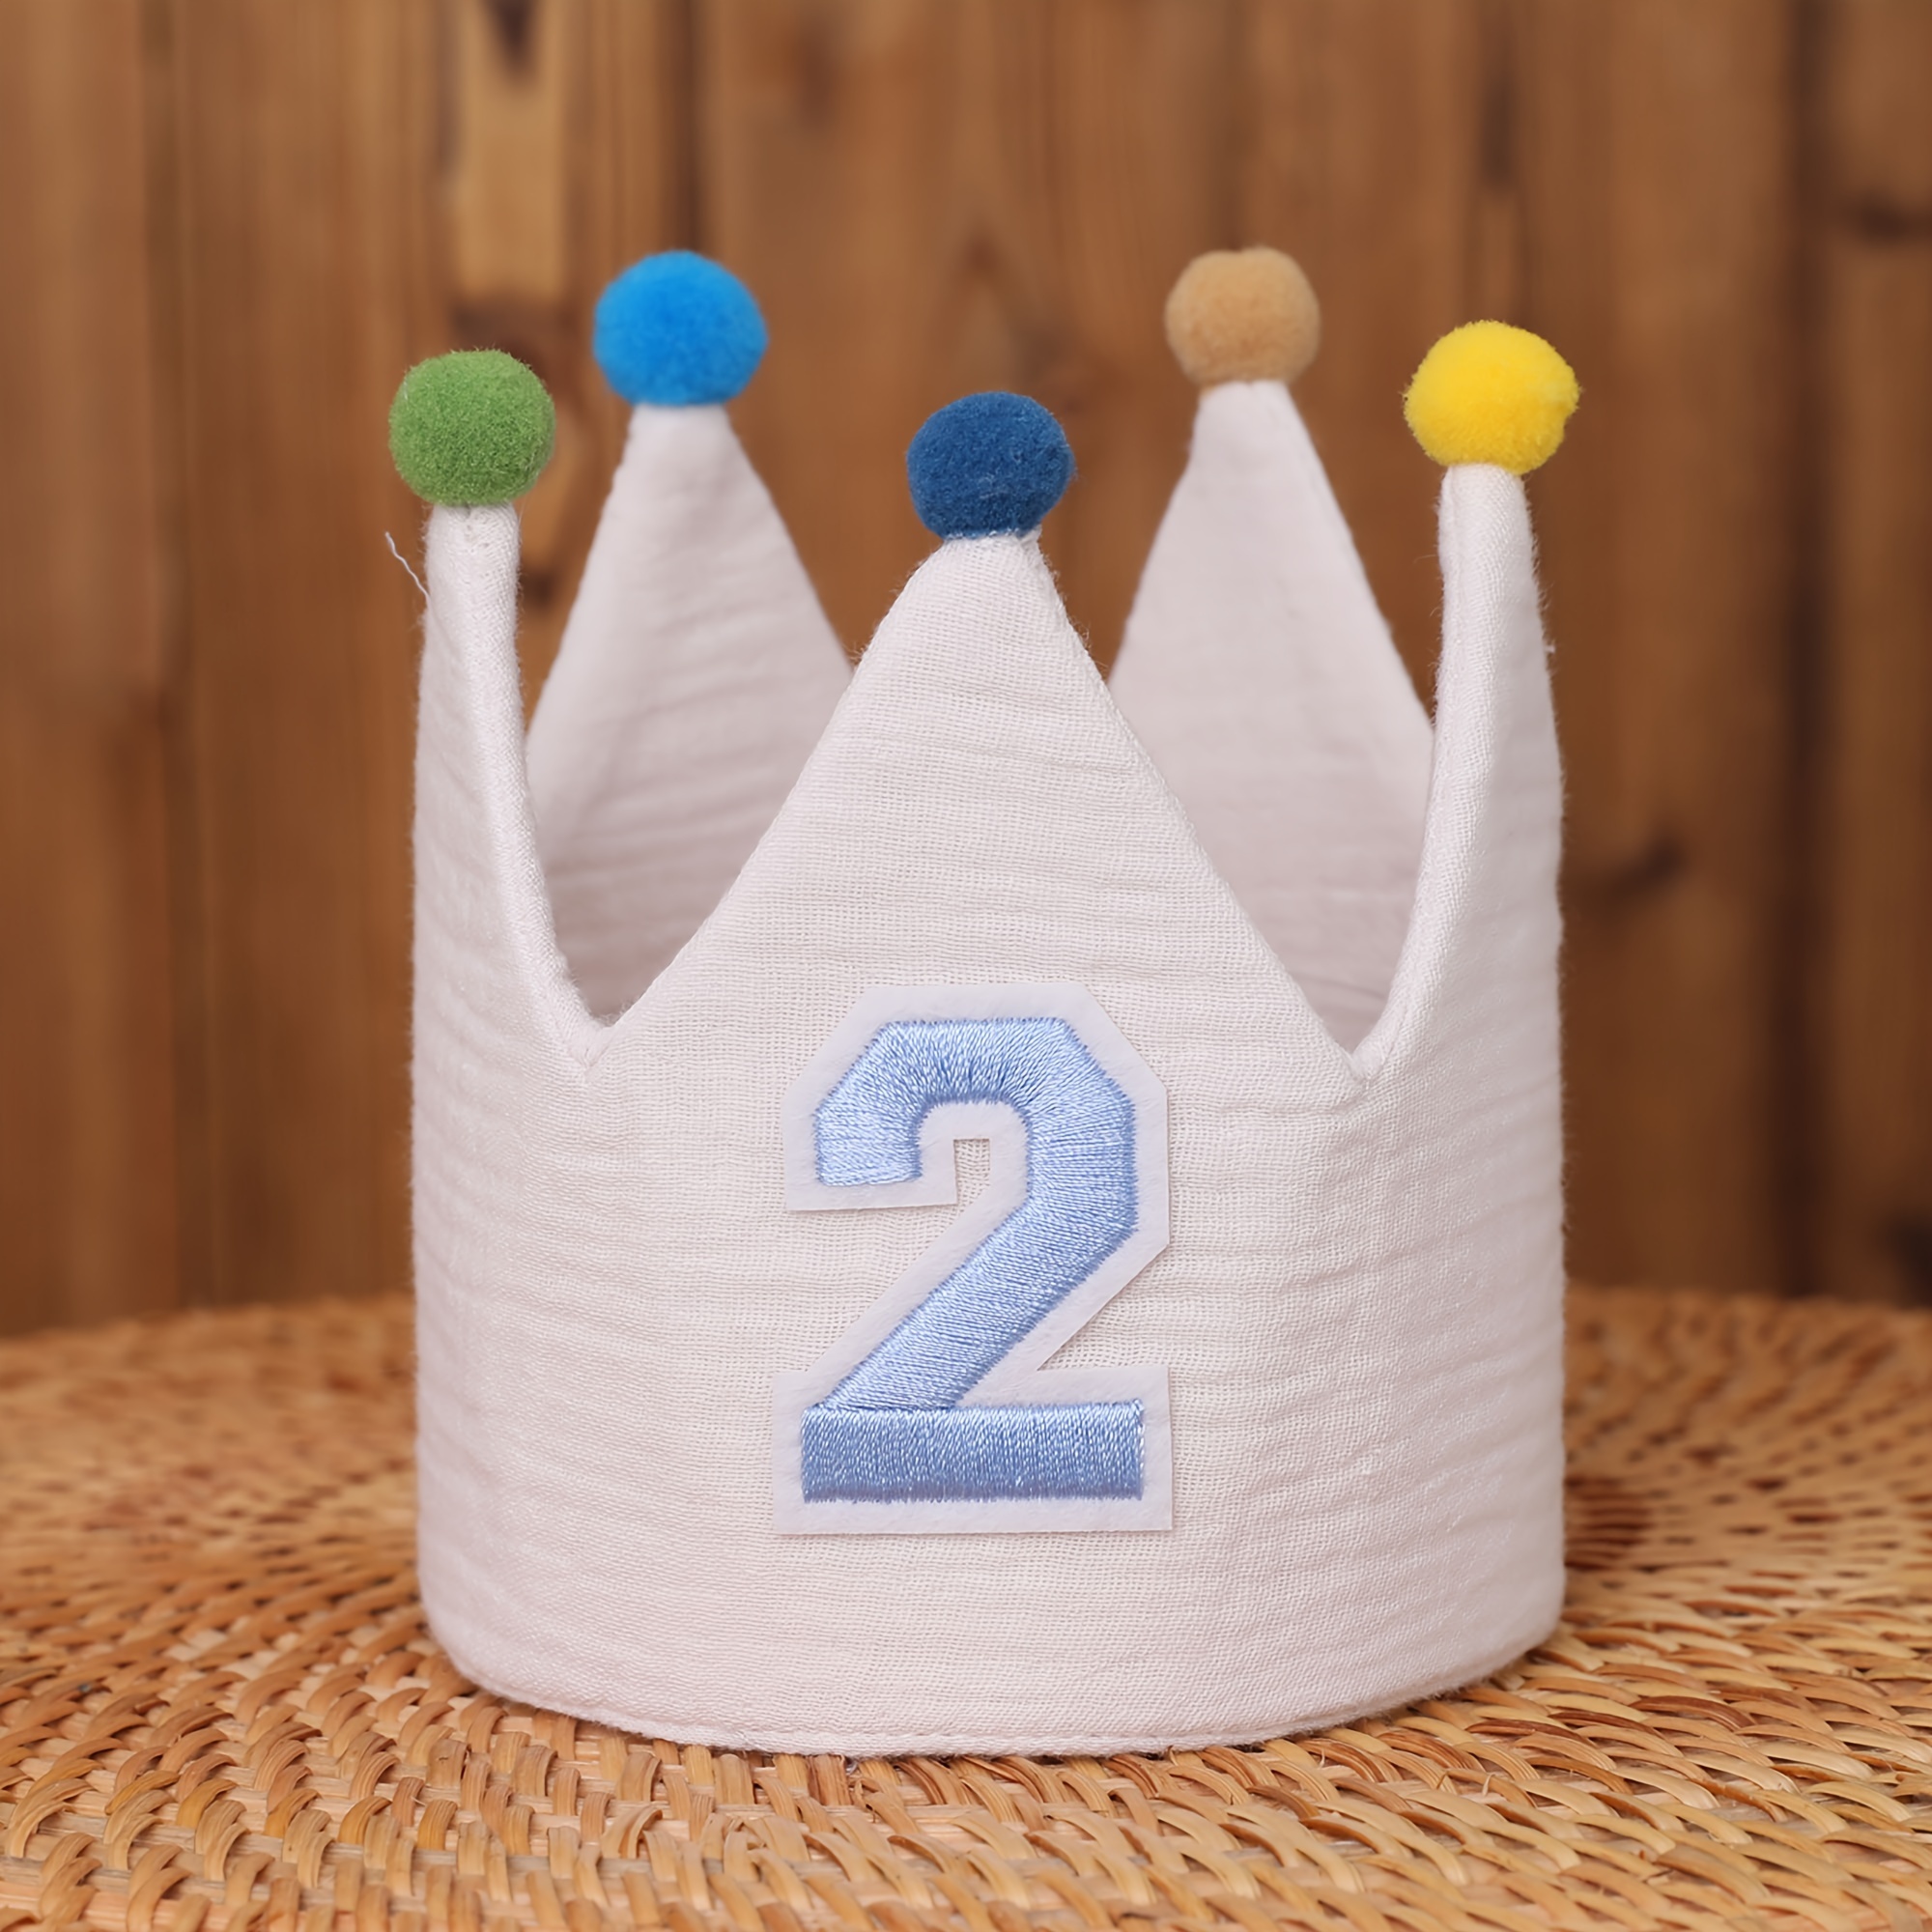 Corona compleanno cappello bambini festa re per corone cappelli d